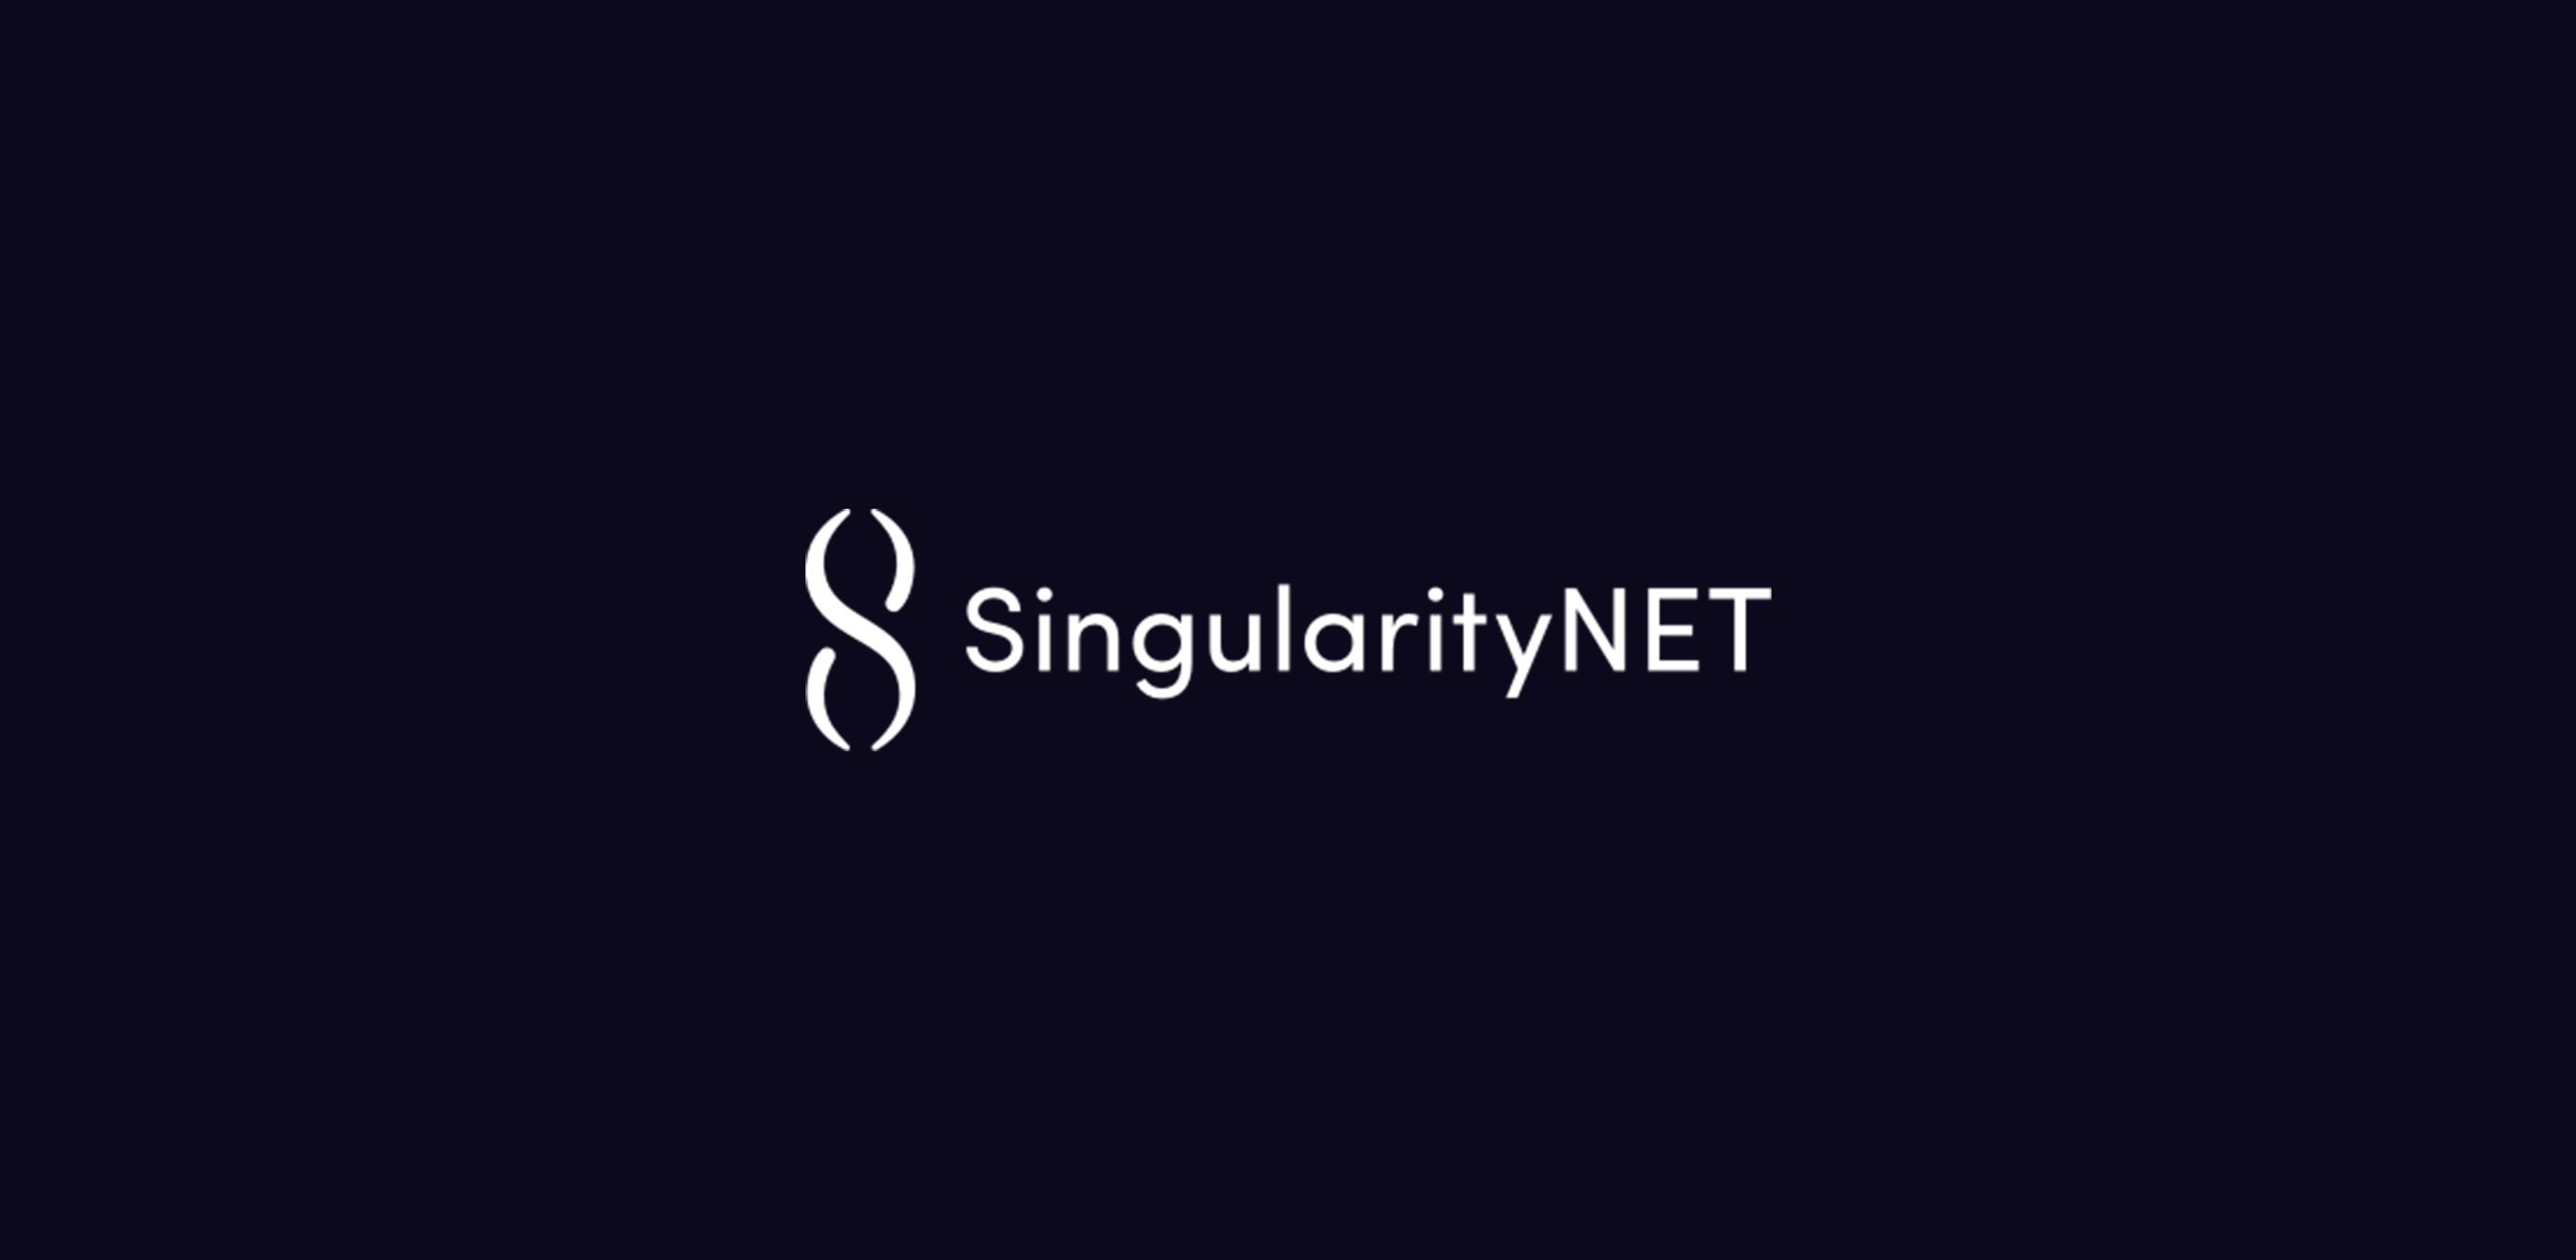 Mi az a SingularityNET? Végső AI hálózat